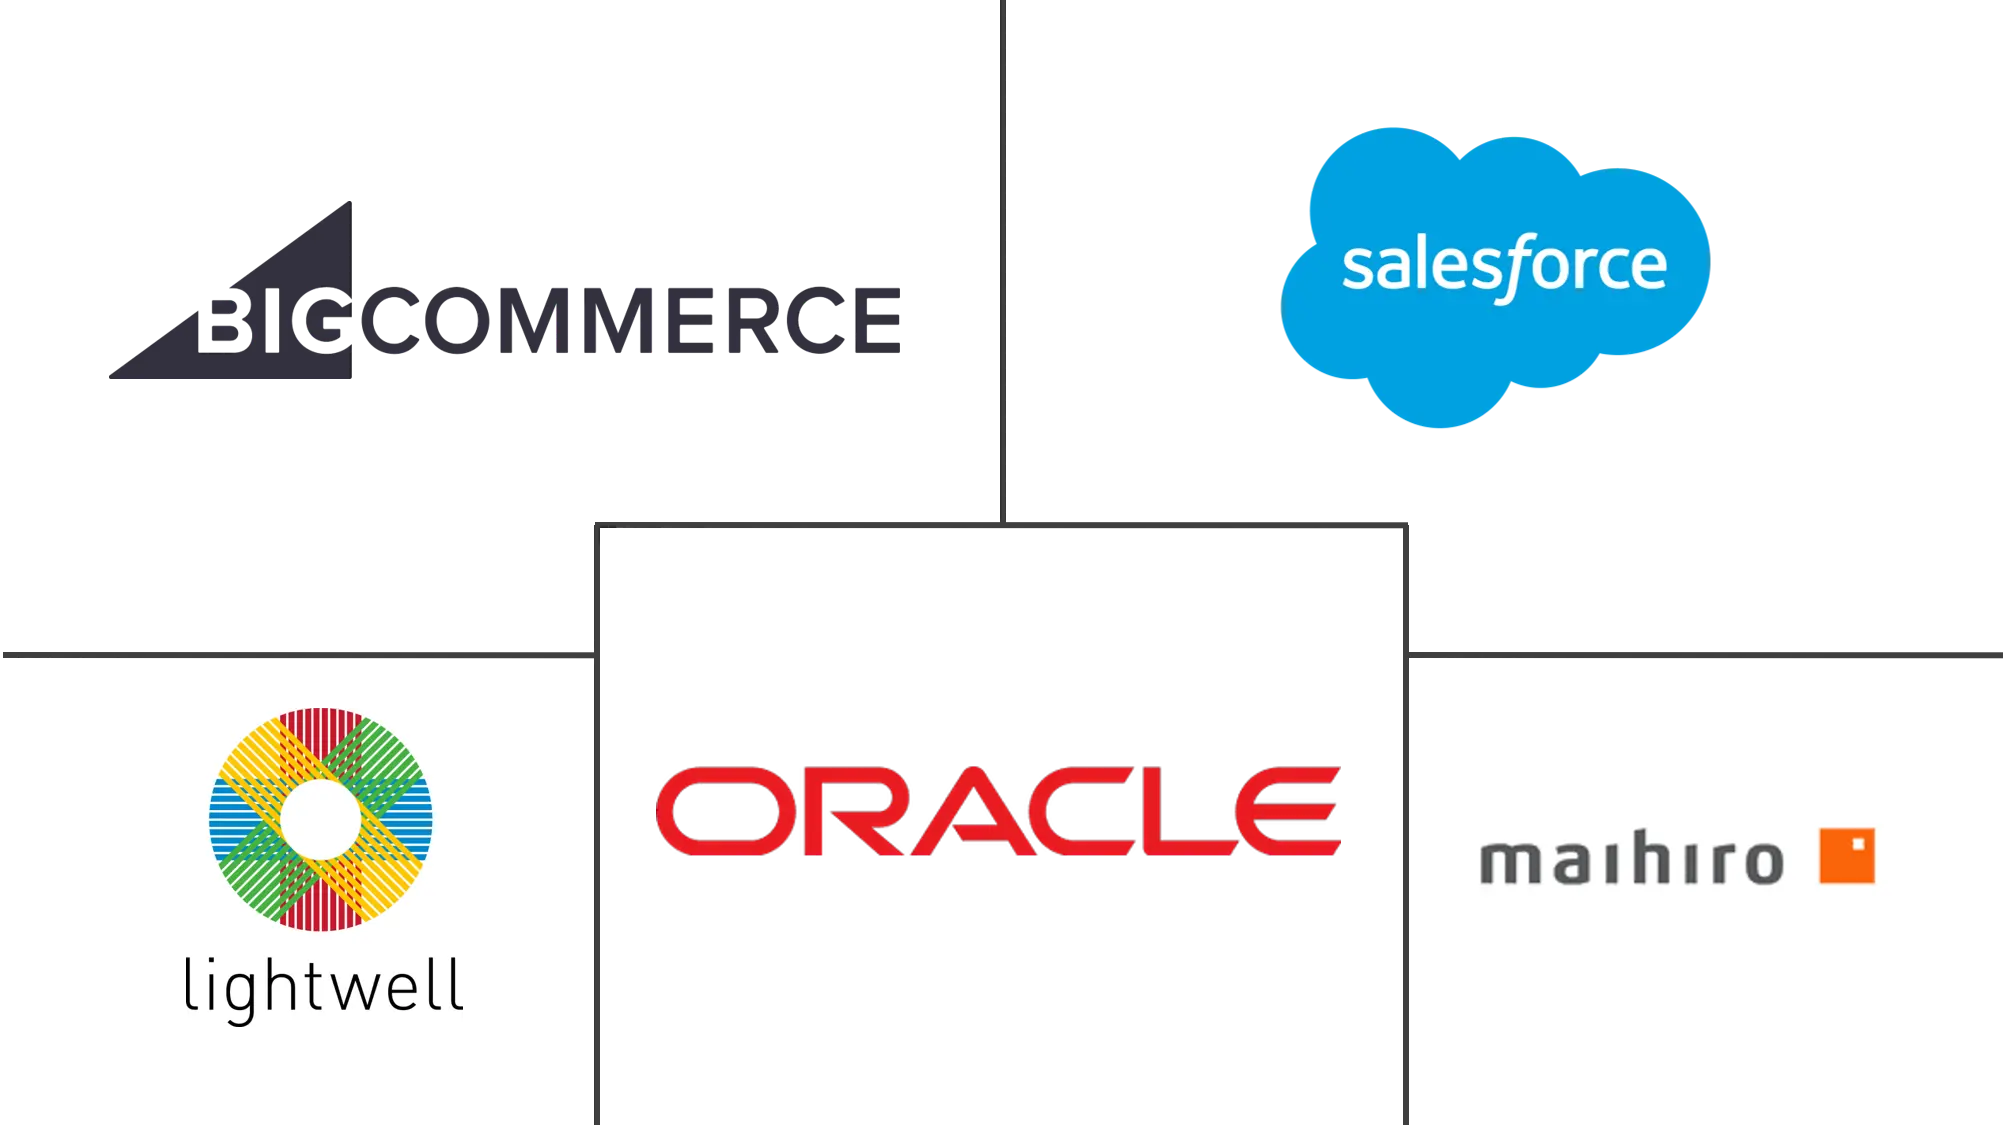 Commerce Cloud Market Major Players